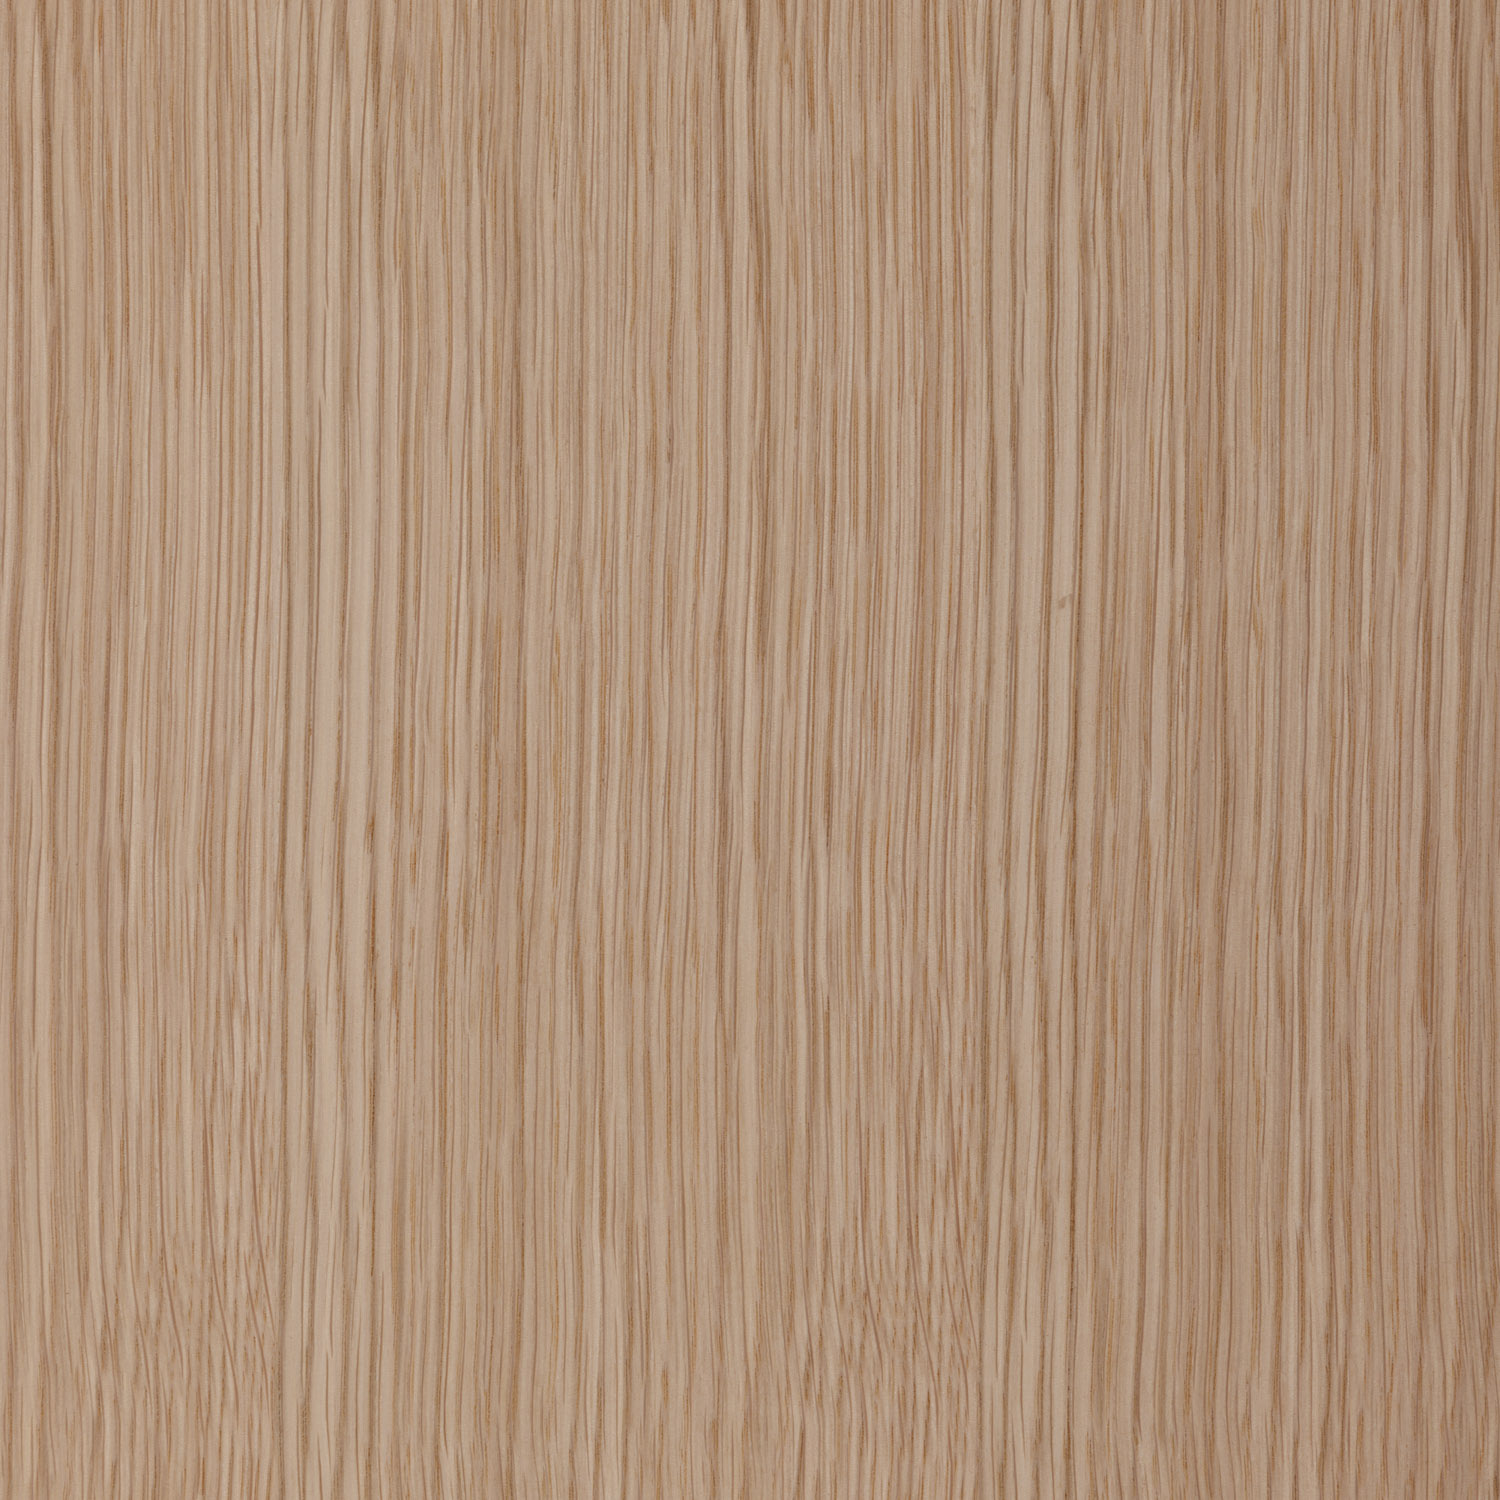 white oak natural wood veneer panel